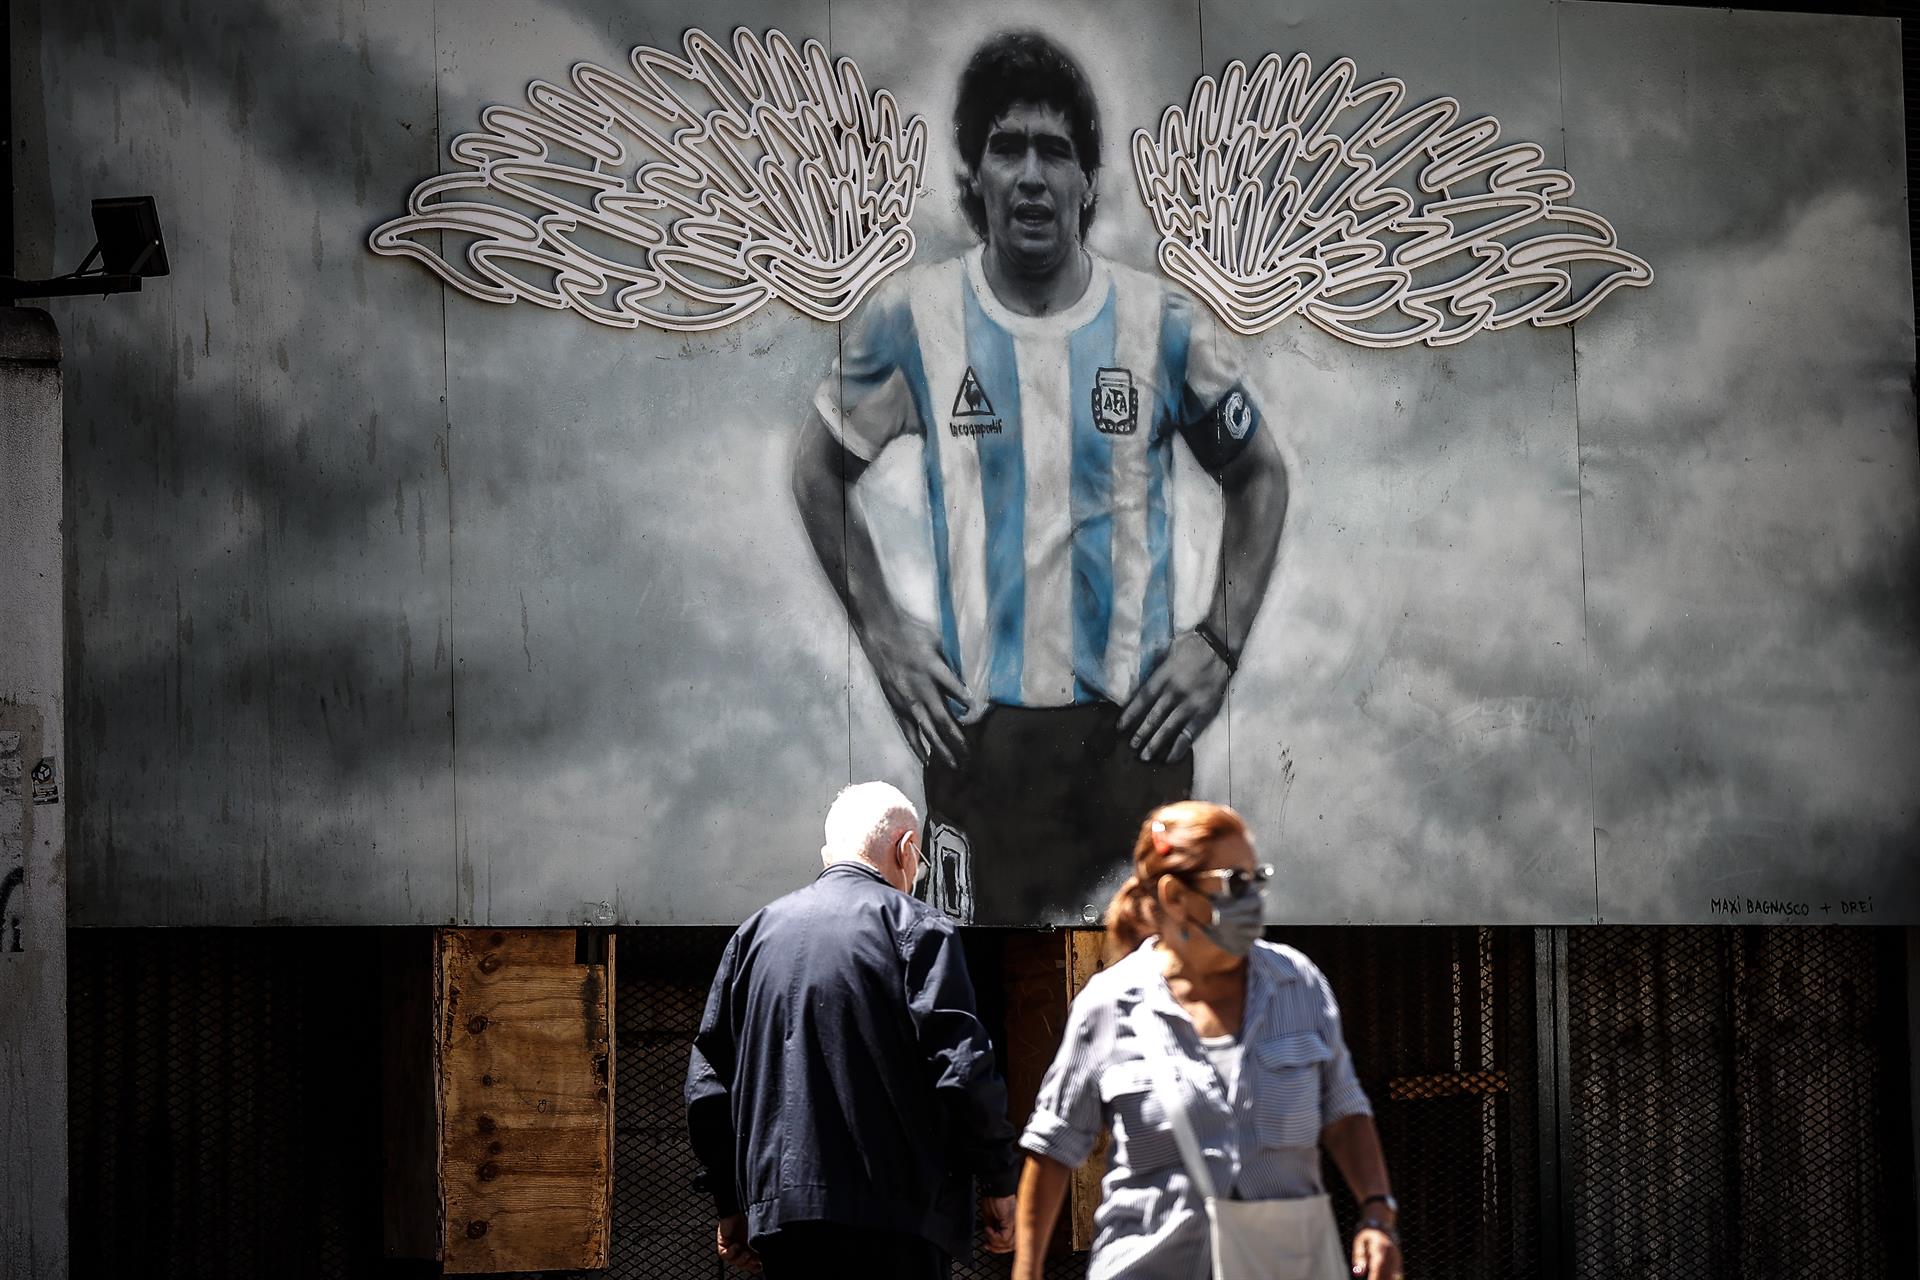 El juicio que investiga la muerte de Diego Armando Maradona comenzará el #1Oct